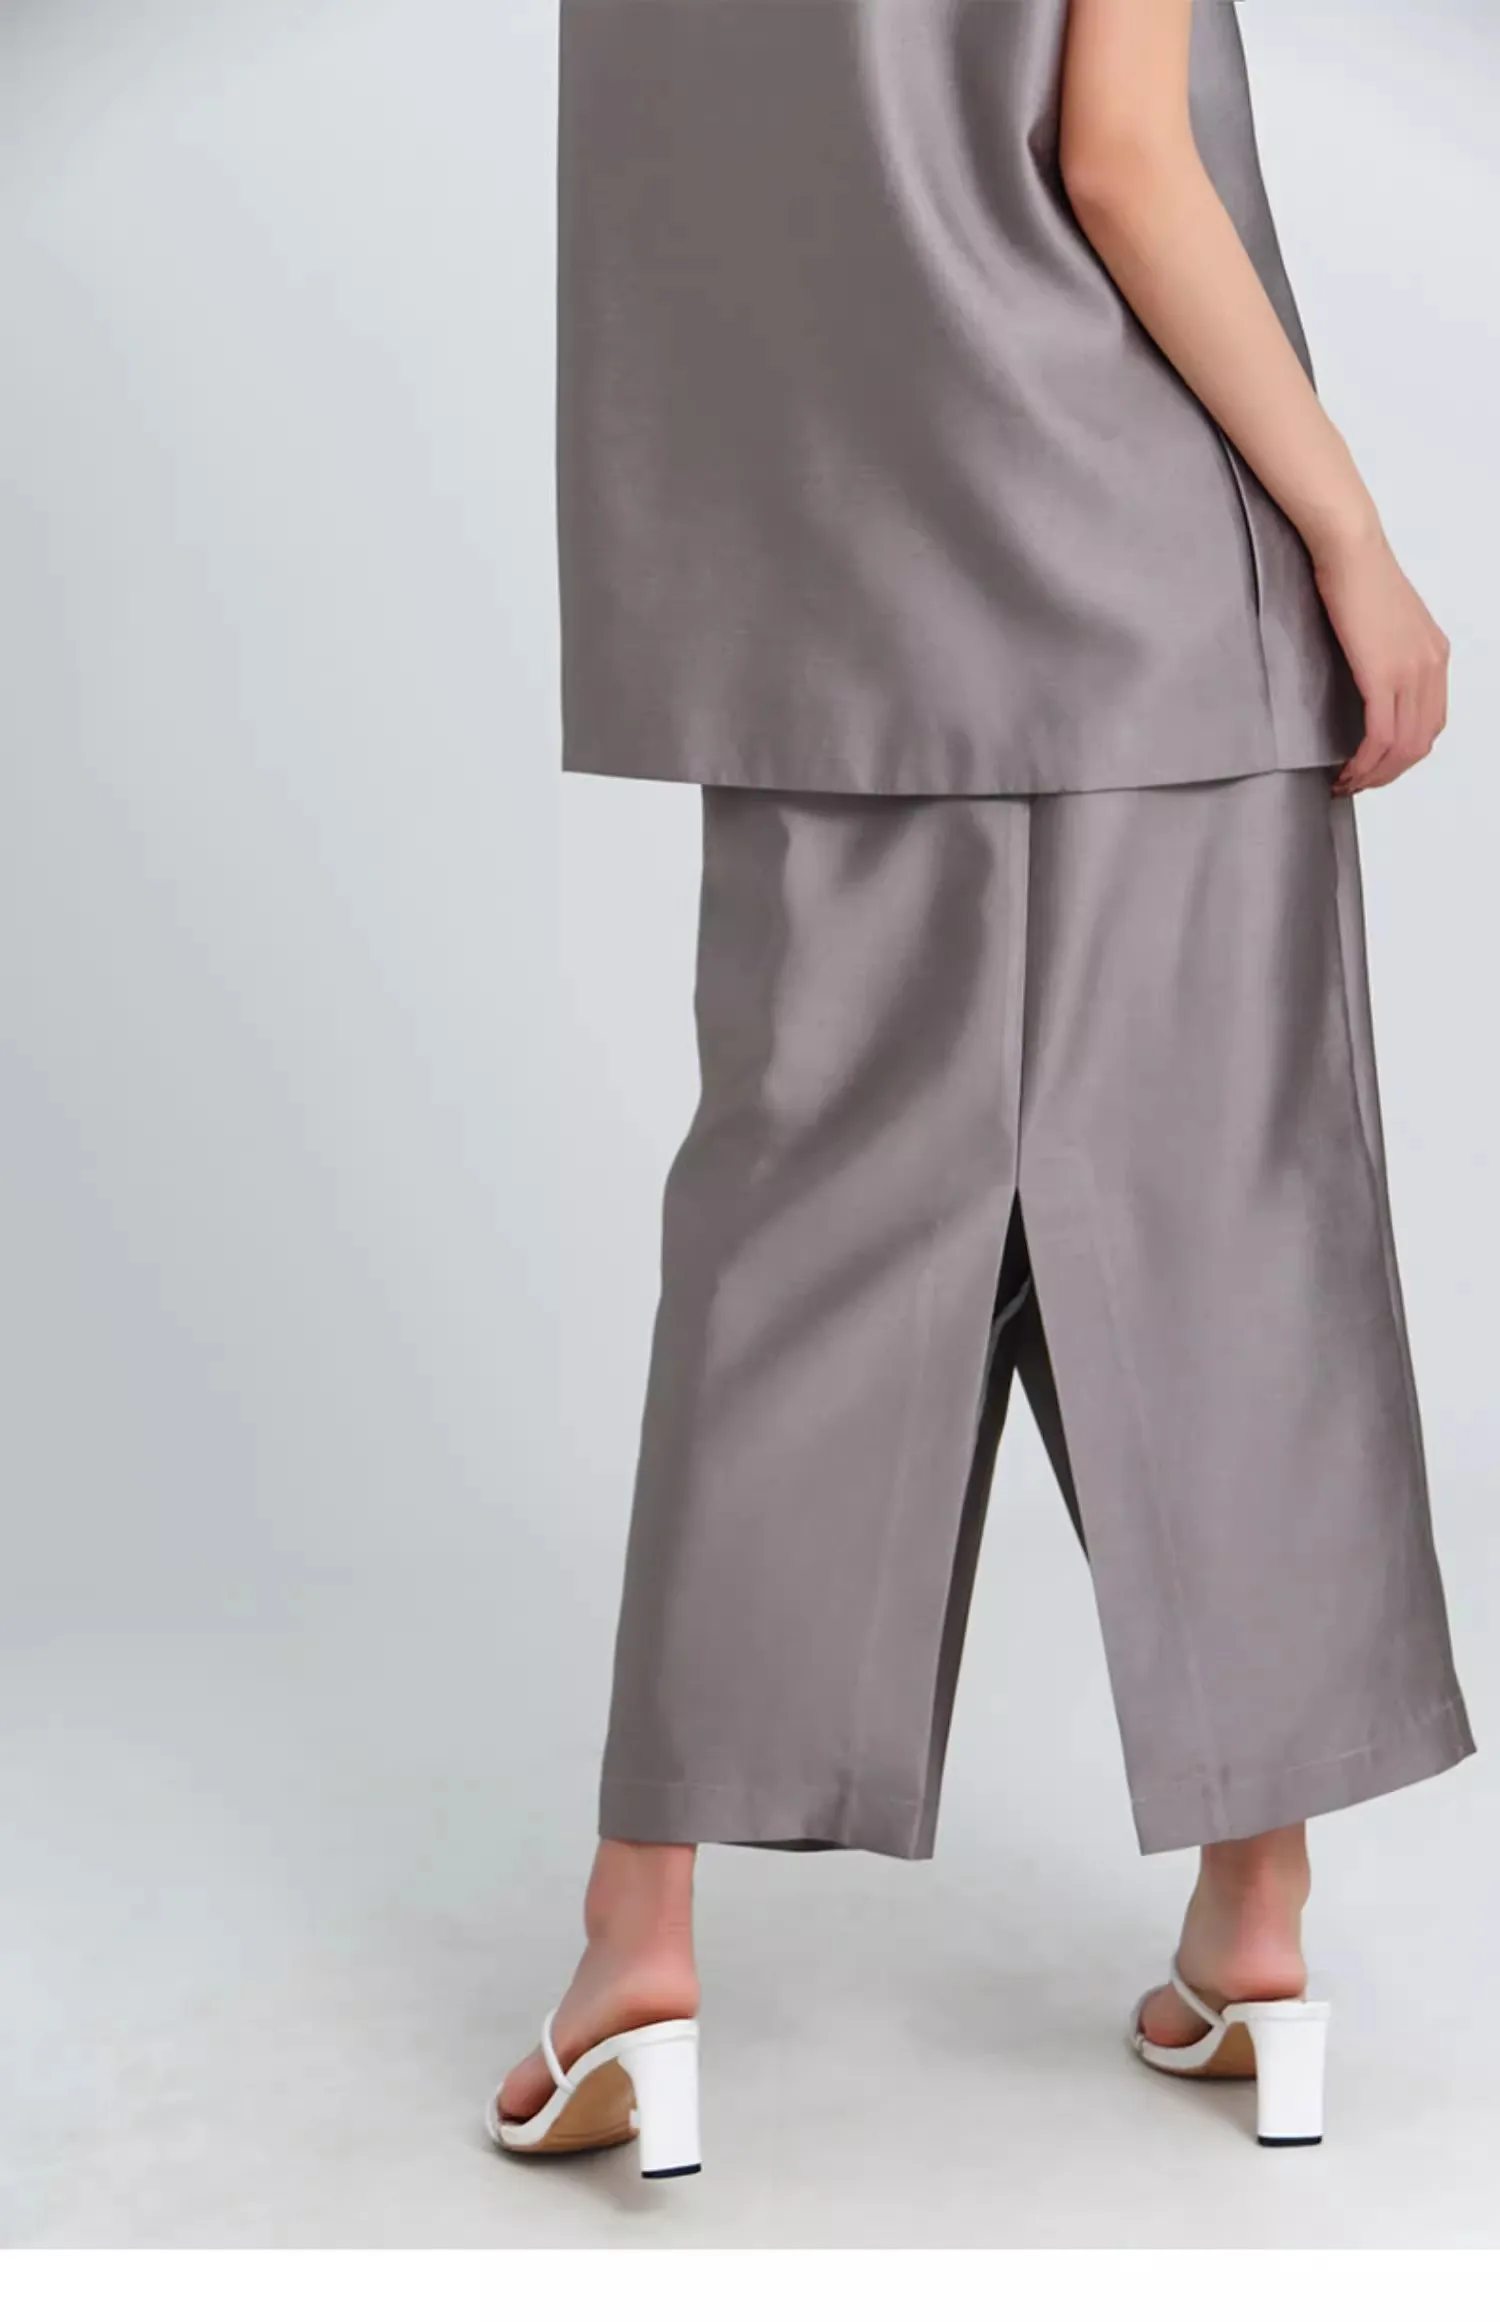 Kadın Pist Moda İlkbahar Yaz Tasarımcı Disimetri Bölünmüş Etek Kadın Sonbahar Yüksek Bel A-line Etek TB1575